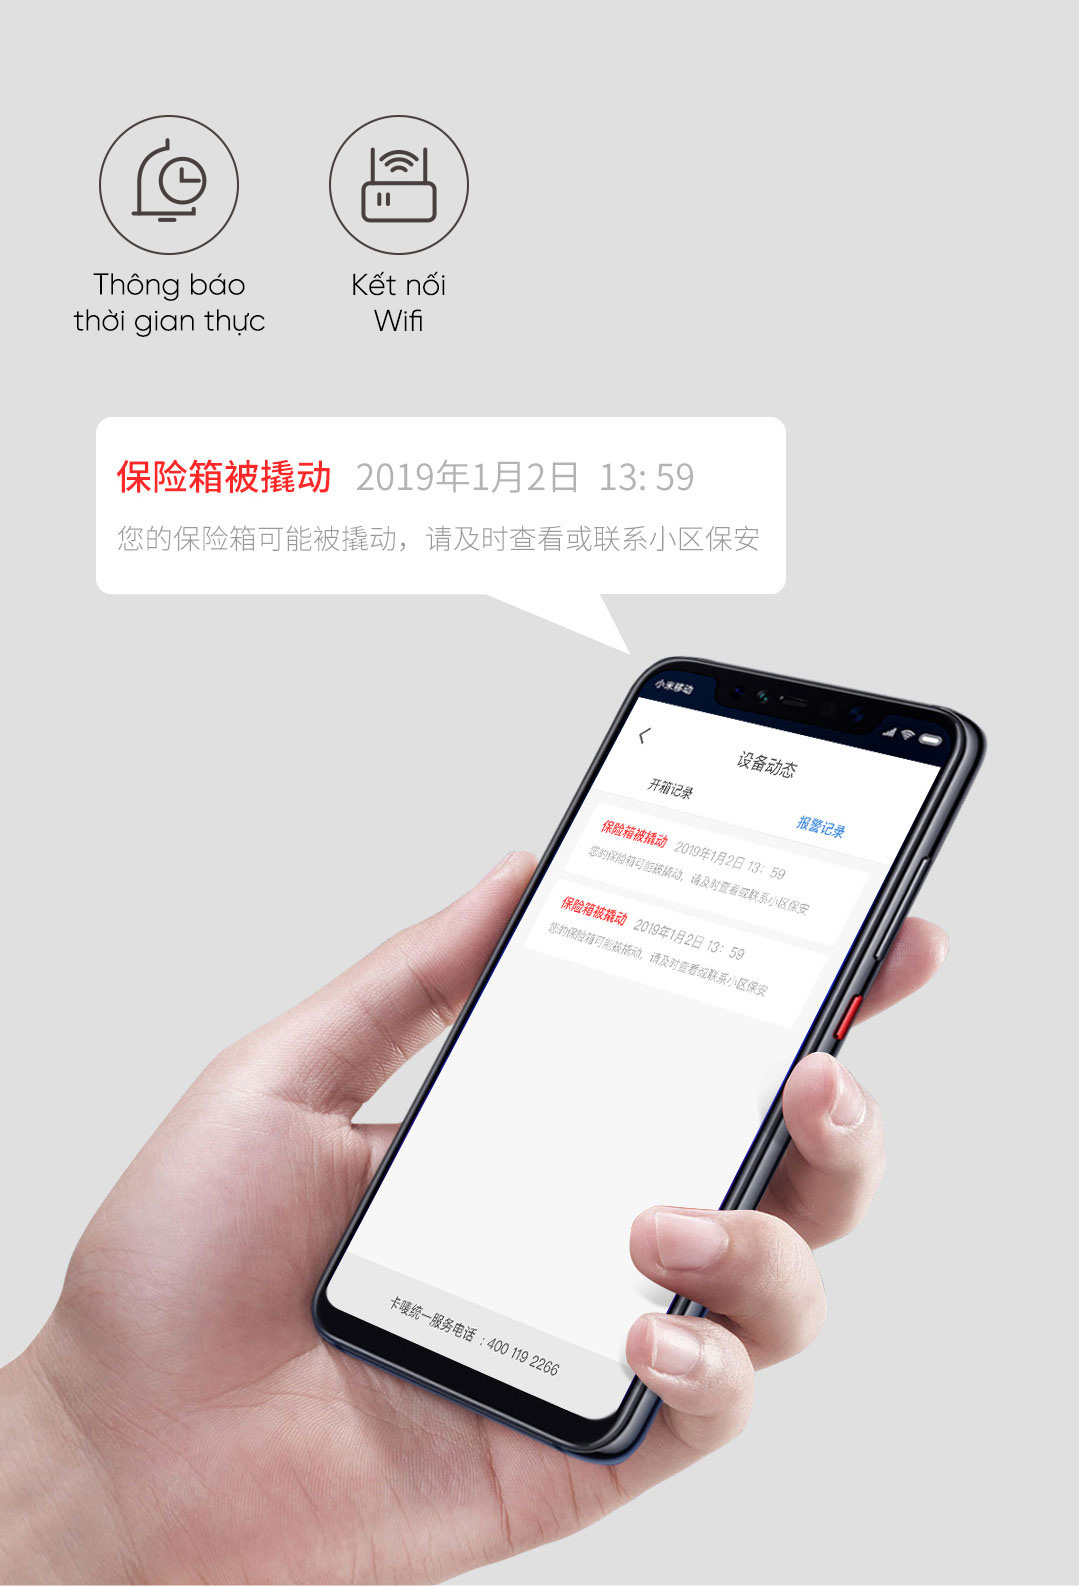 Kết nối App Mijia cho người sử dụng dễ dàng kiểm soát két sắt. Mỗi khi bạn mở két hoặc két sắt bị xâm nhập bât hợp pháp thì tín hiệu sẽ được truyền đi và thông báo đến di động của bạn